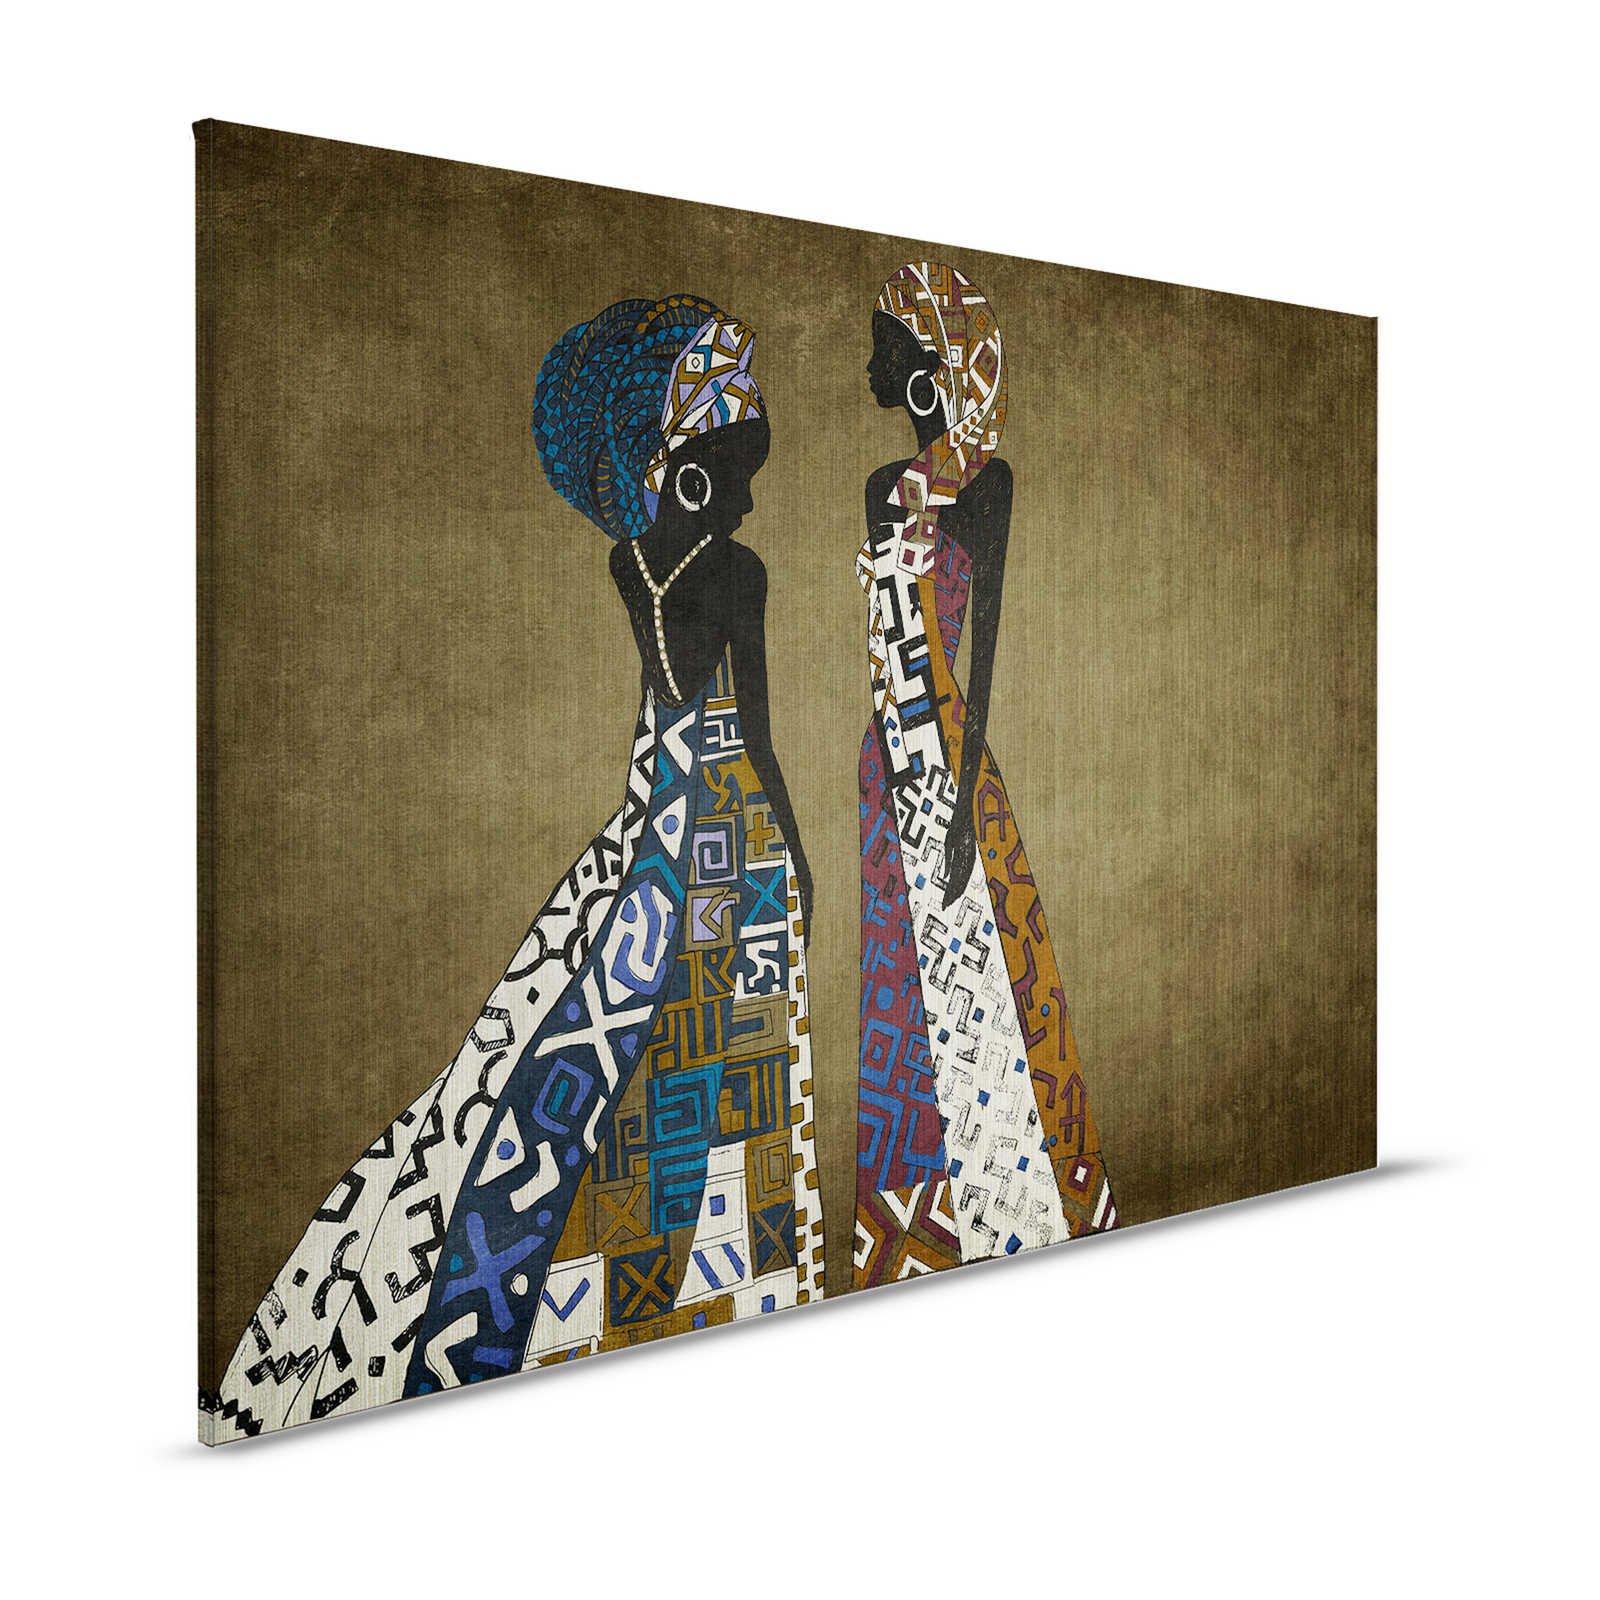 Nairobi 3 - Afrique toile Dress Style avec motif ethnique - 1,20 m x 0,80 m
